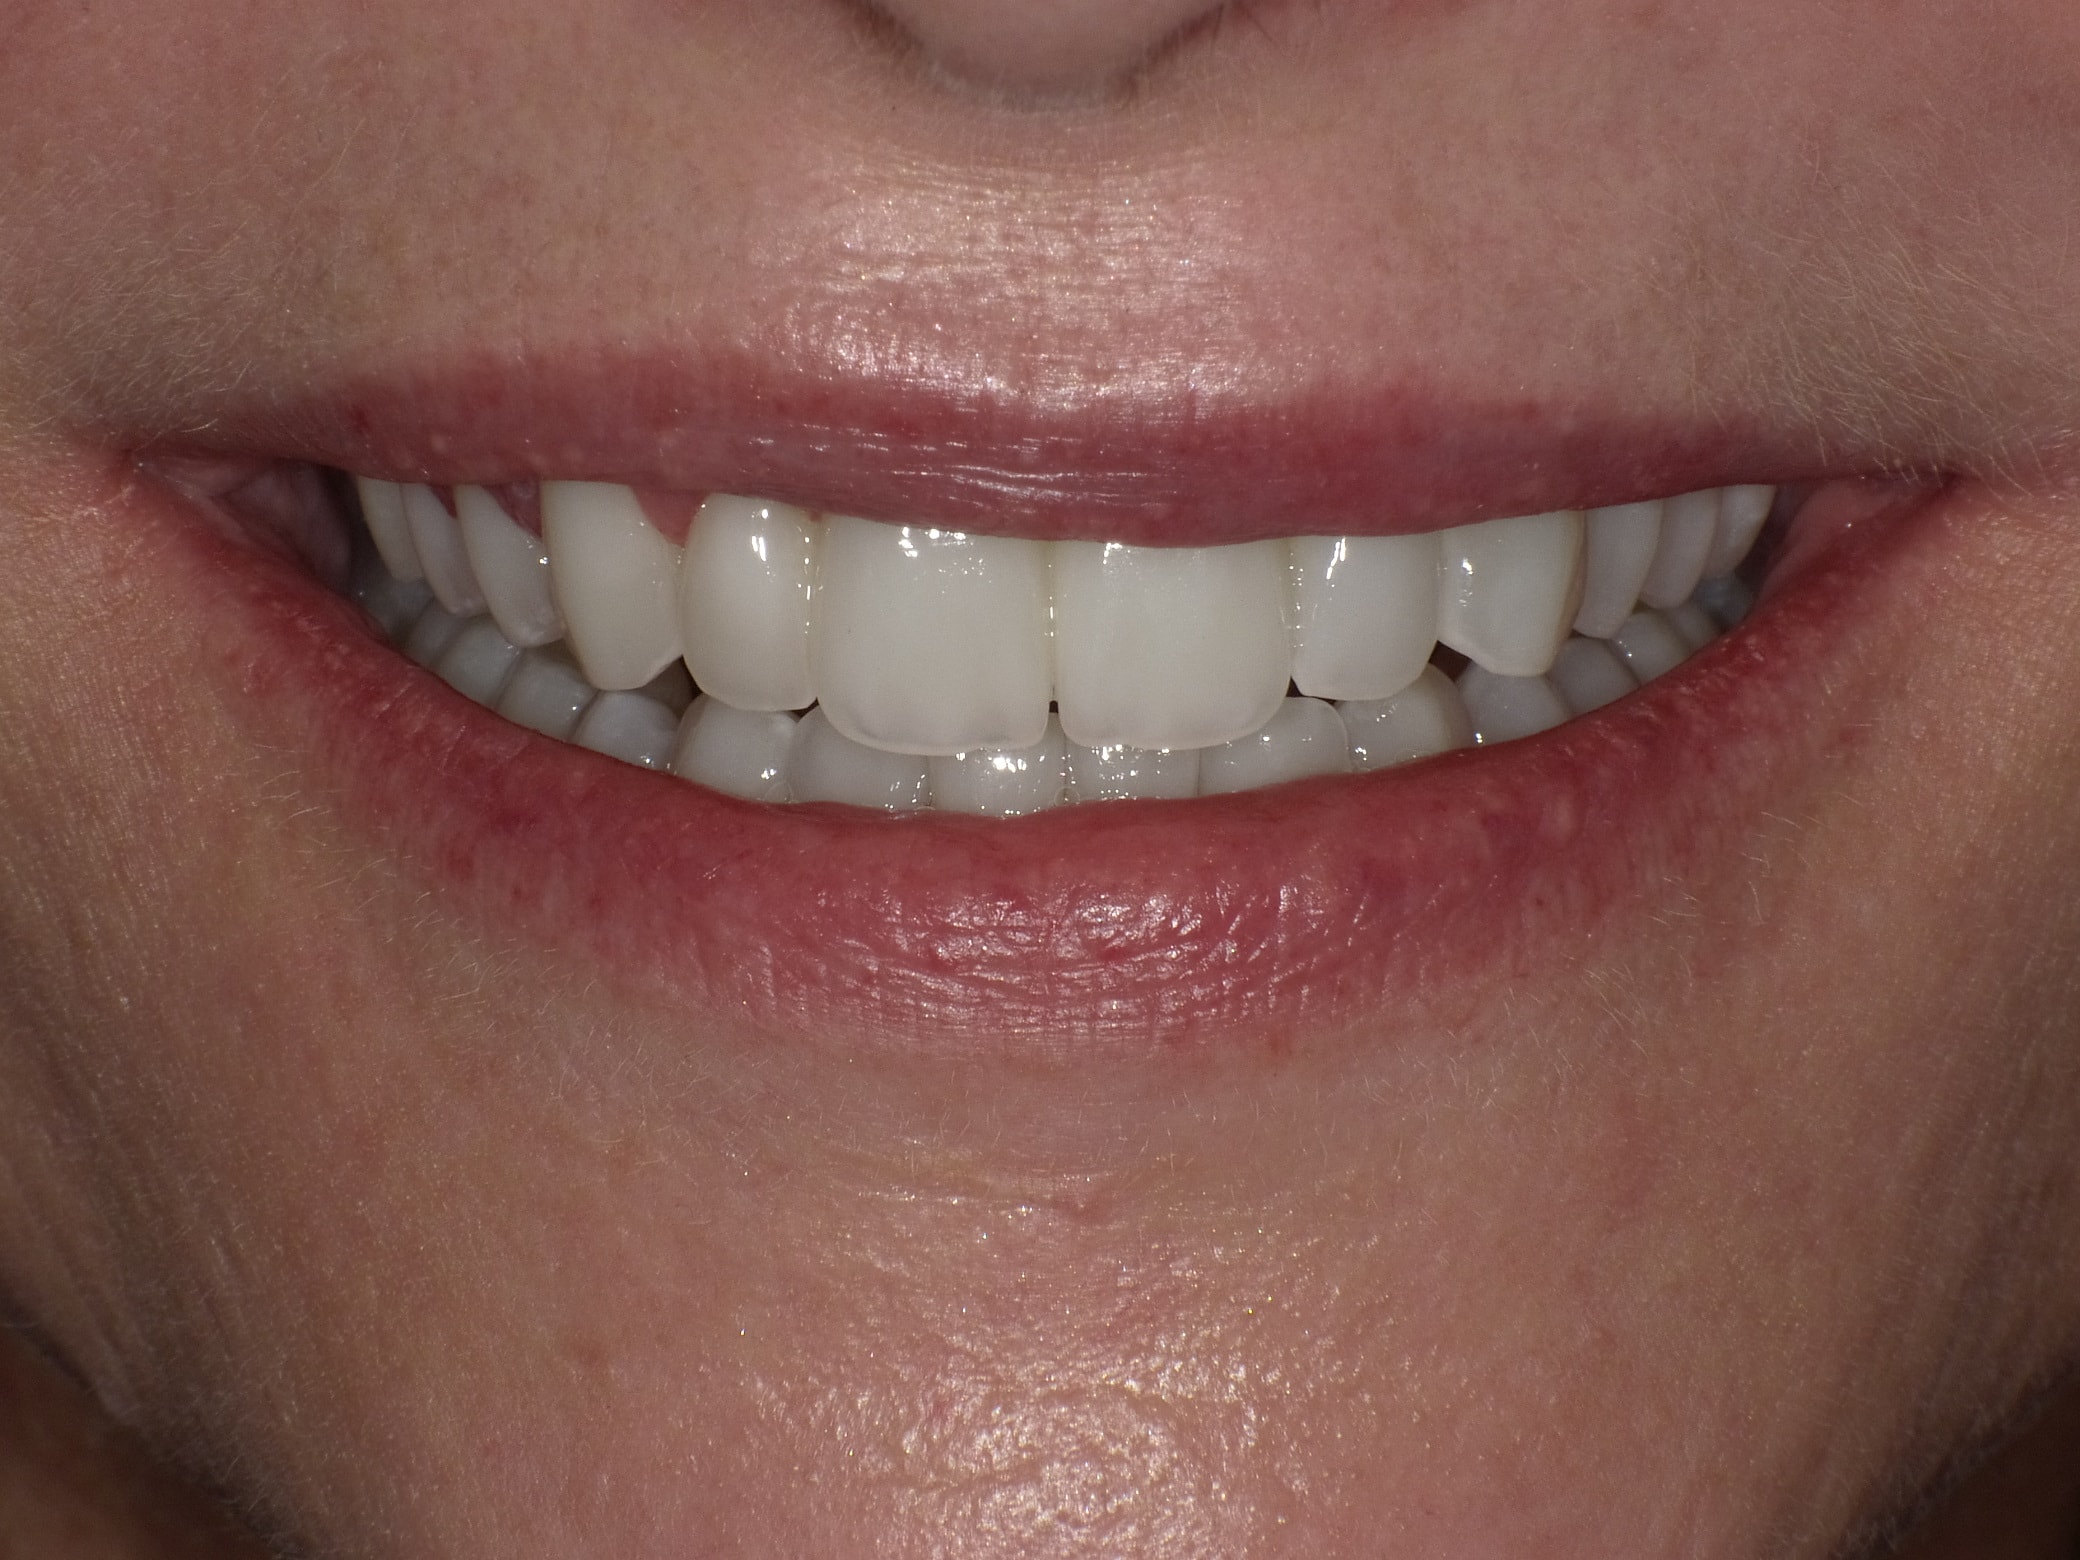 Komplette Veränderung mit vollkeramischen Kronen und Veneers in nur 2 Langzeitterminen; auch hier nachher ganz anderes Auftreten der Patientin, die ihre Zähne jetzt gerne zeigt und wieder gerne lacht